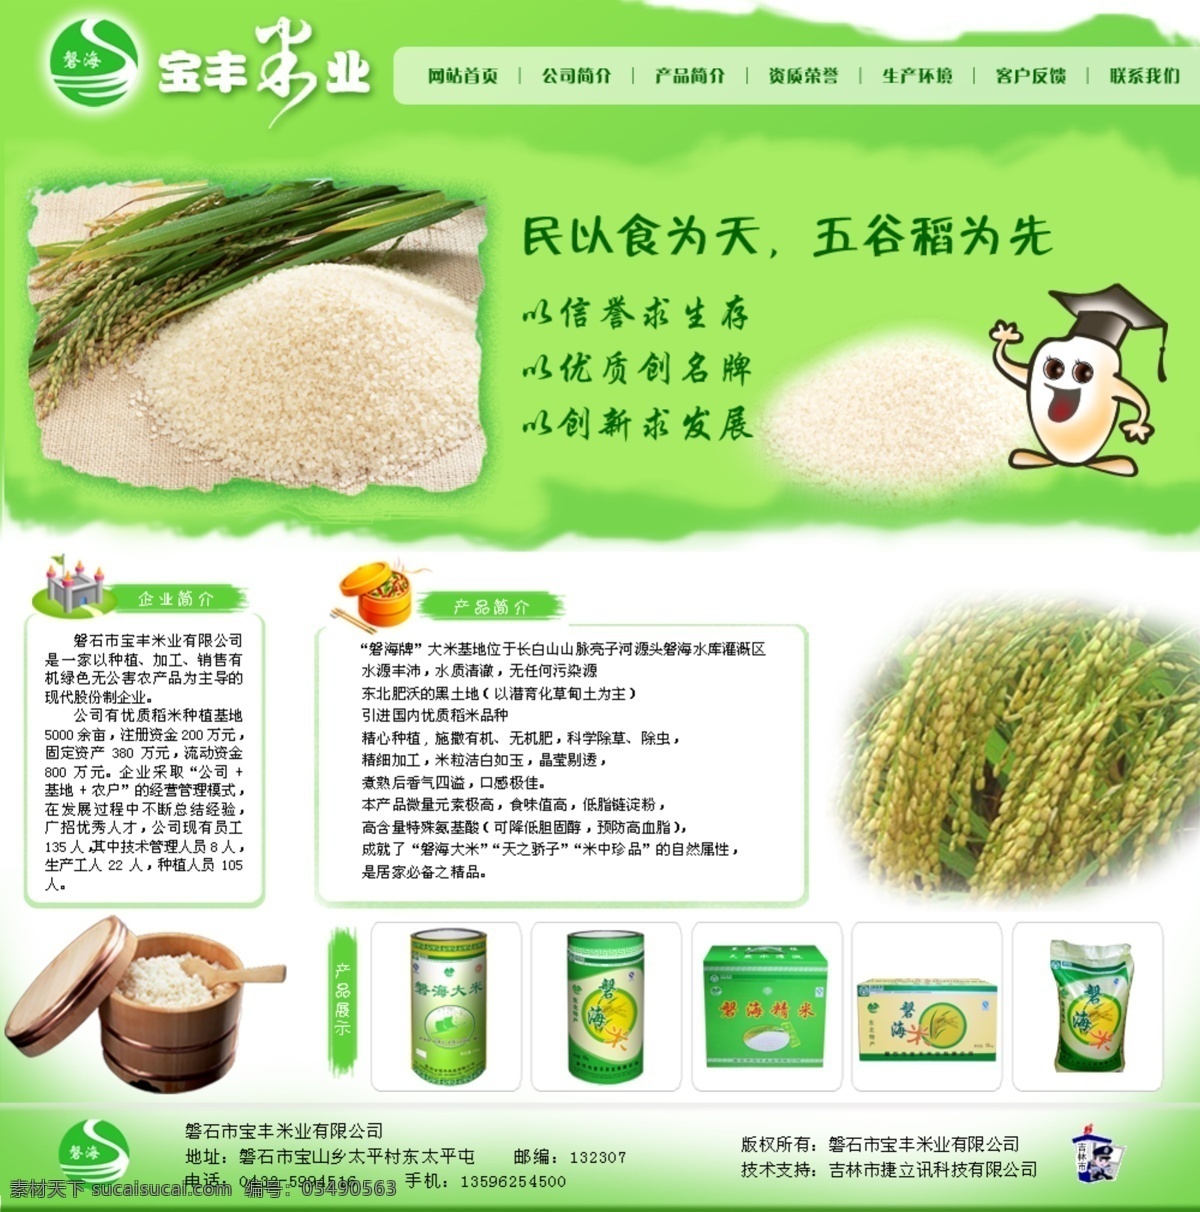 天然 绿色农业 公司 网站 绿色 农业 网页模板 源文件 中文模版 米业 矢量图 日常生活